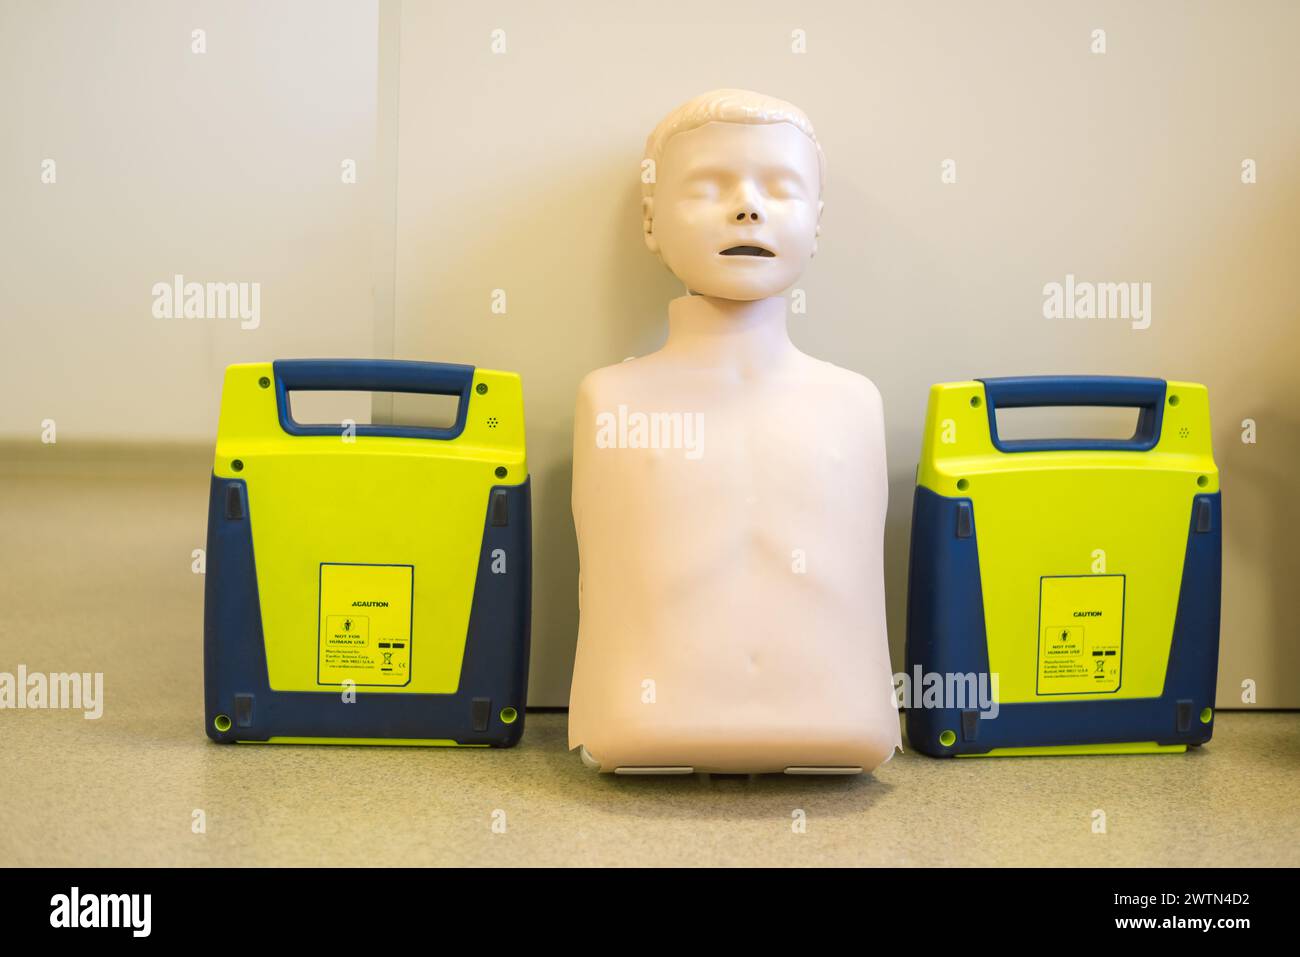 Manichino per la dimostrazione della rianimazione cardiopolmonare RCP per i pazienti resuscitati e per il defibrillatore automatico esterno. Foto Stock